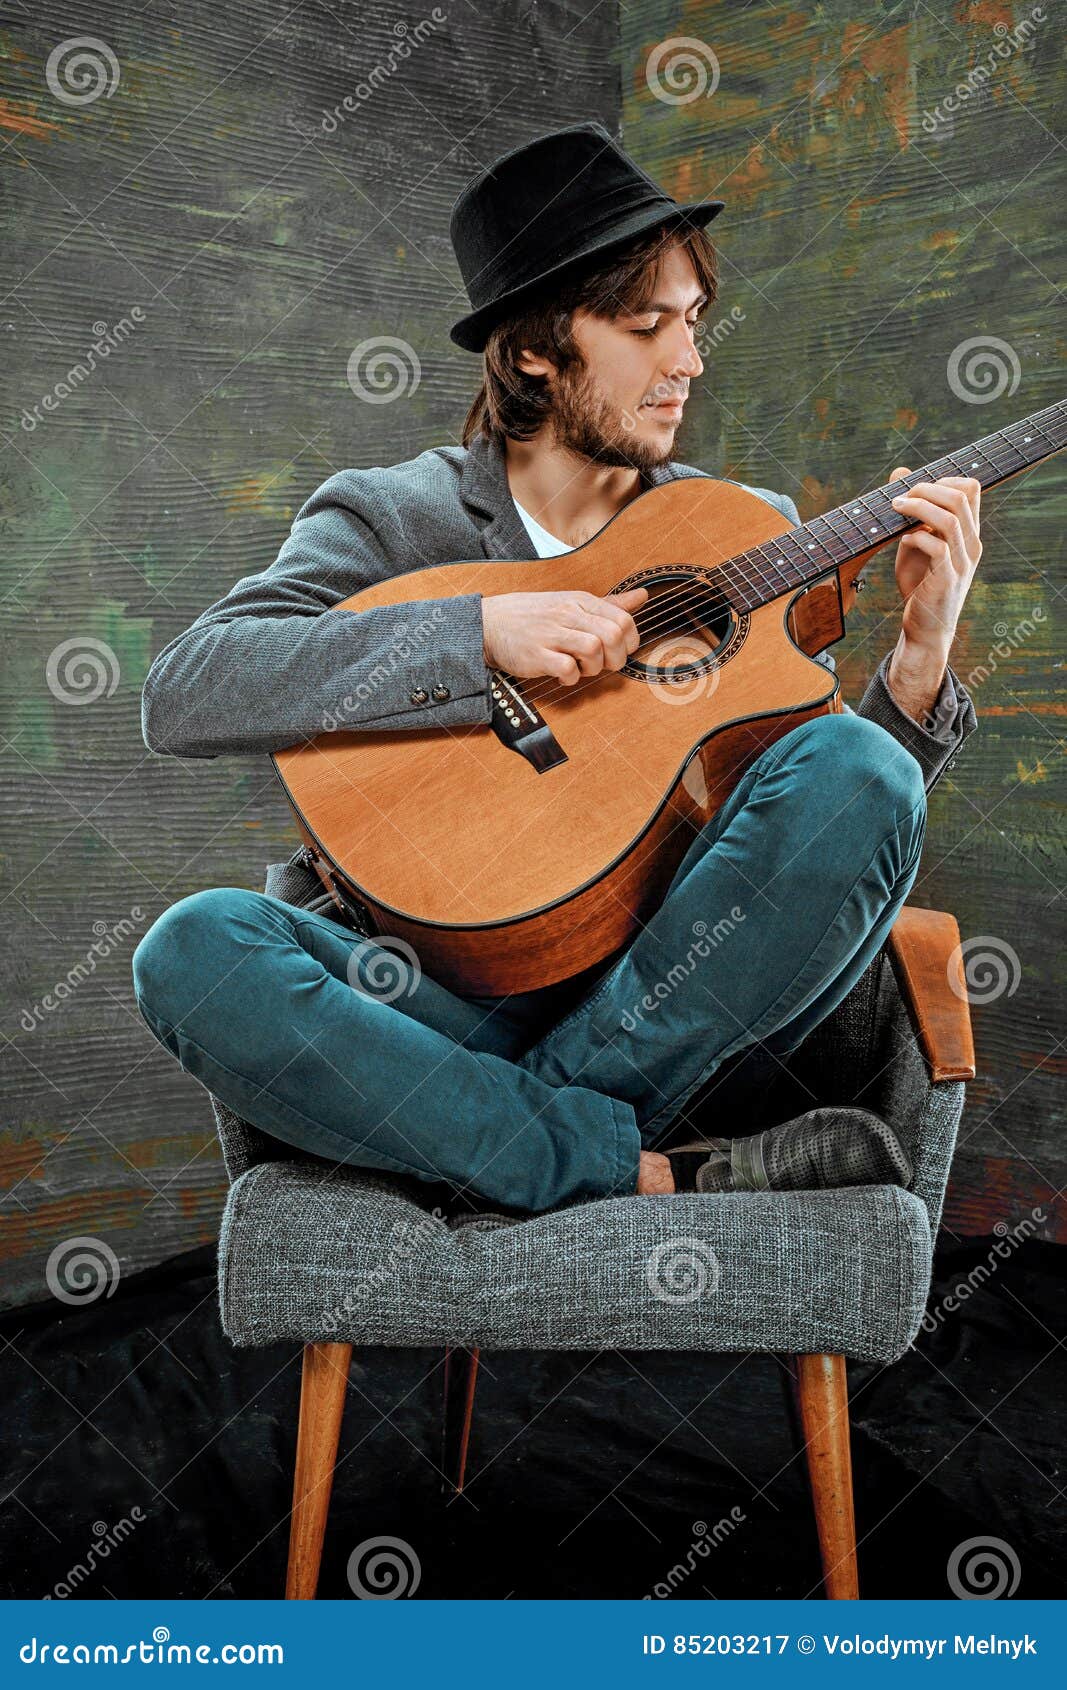 Hat playing. Мальчик в шляпе с гитарой. Играет на гитаре в шляпе. Мужчины в шляпах играют на гитаре. Идеи для фотосессии с гитарой и в шляпе.